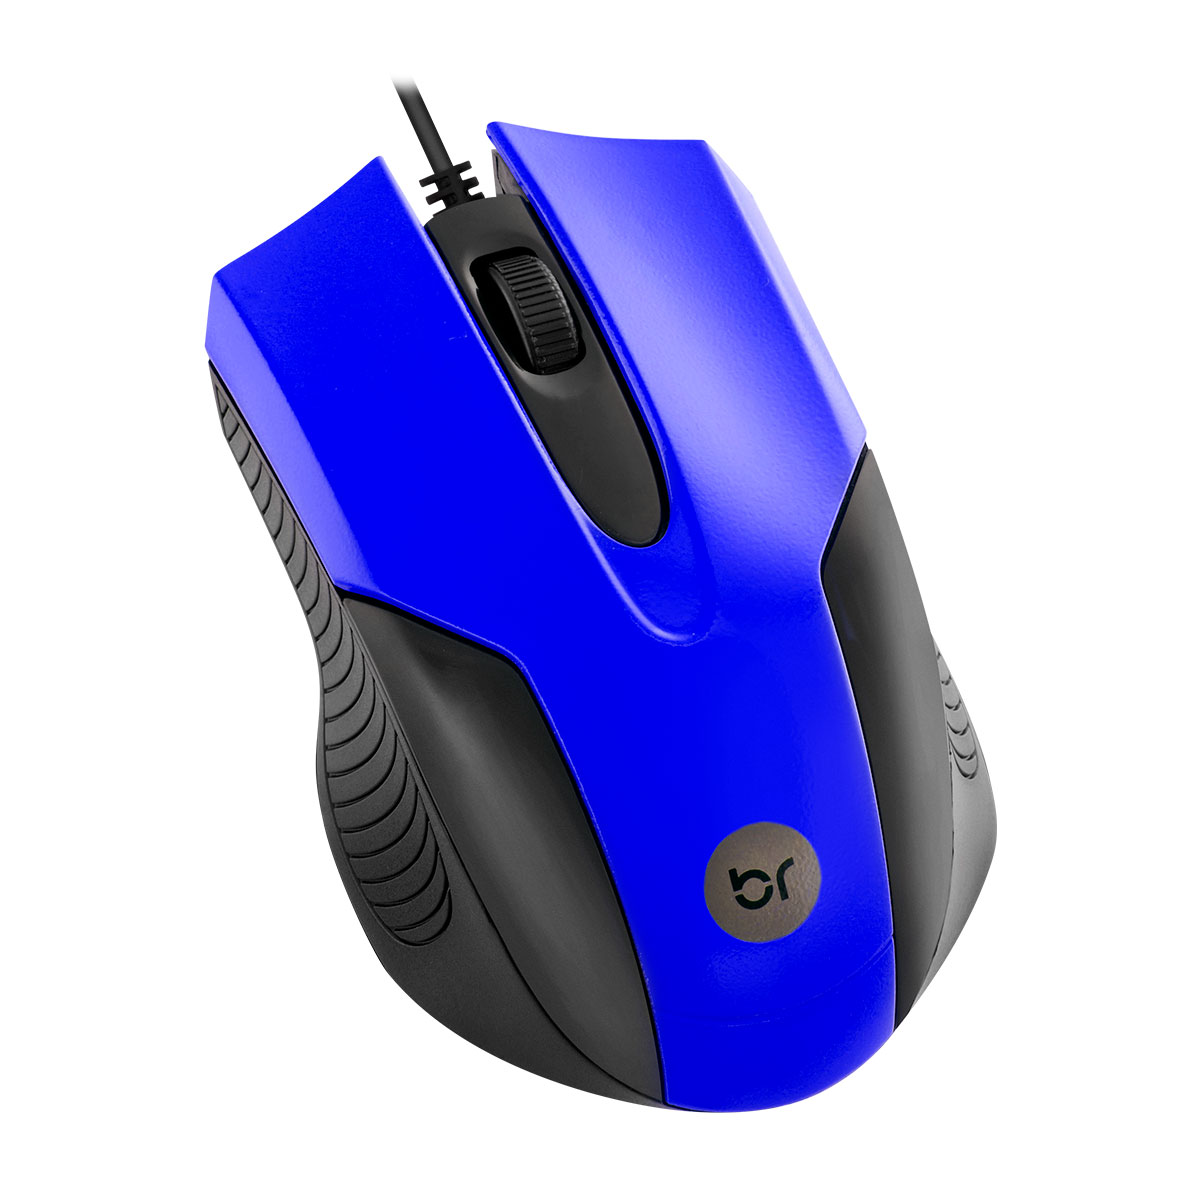 Mouse Usb Óptico 800 Dpi com Fio Azul com Preto 379 Bright  - BRIGHT